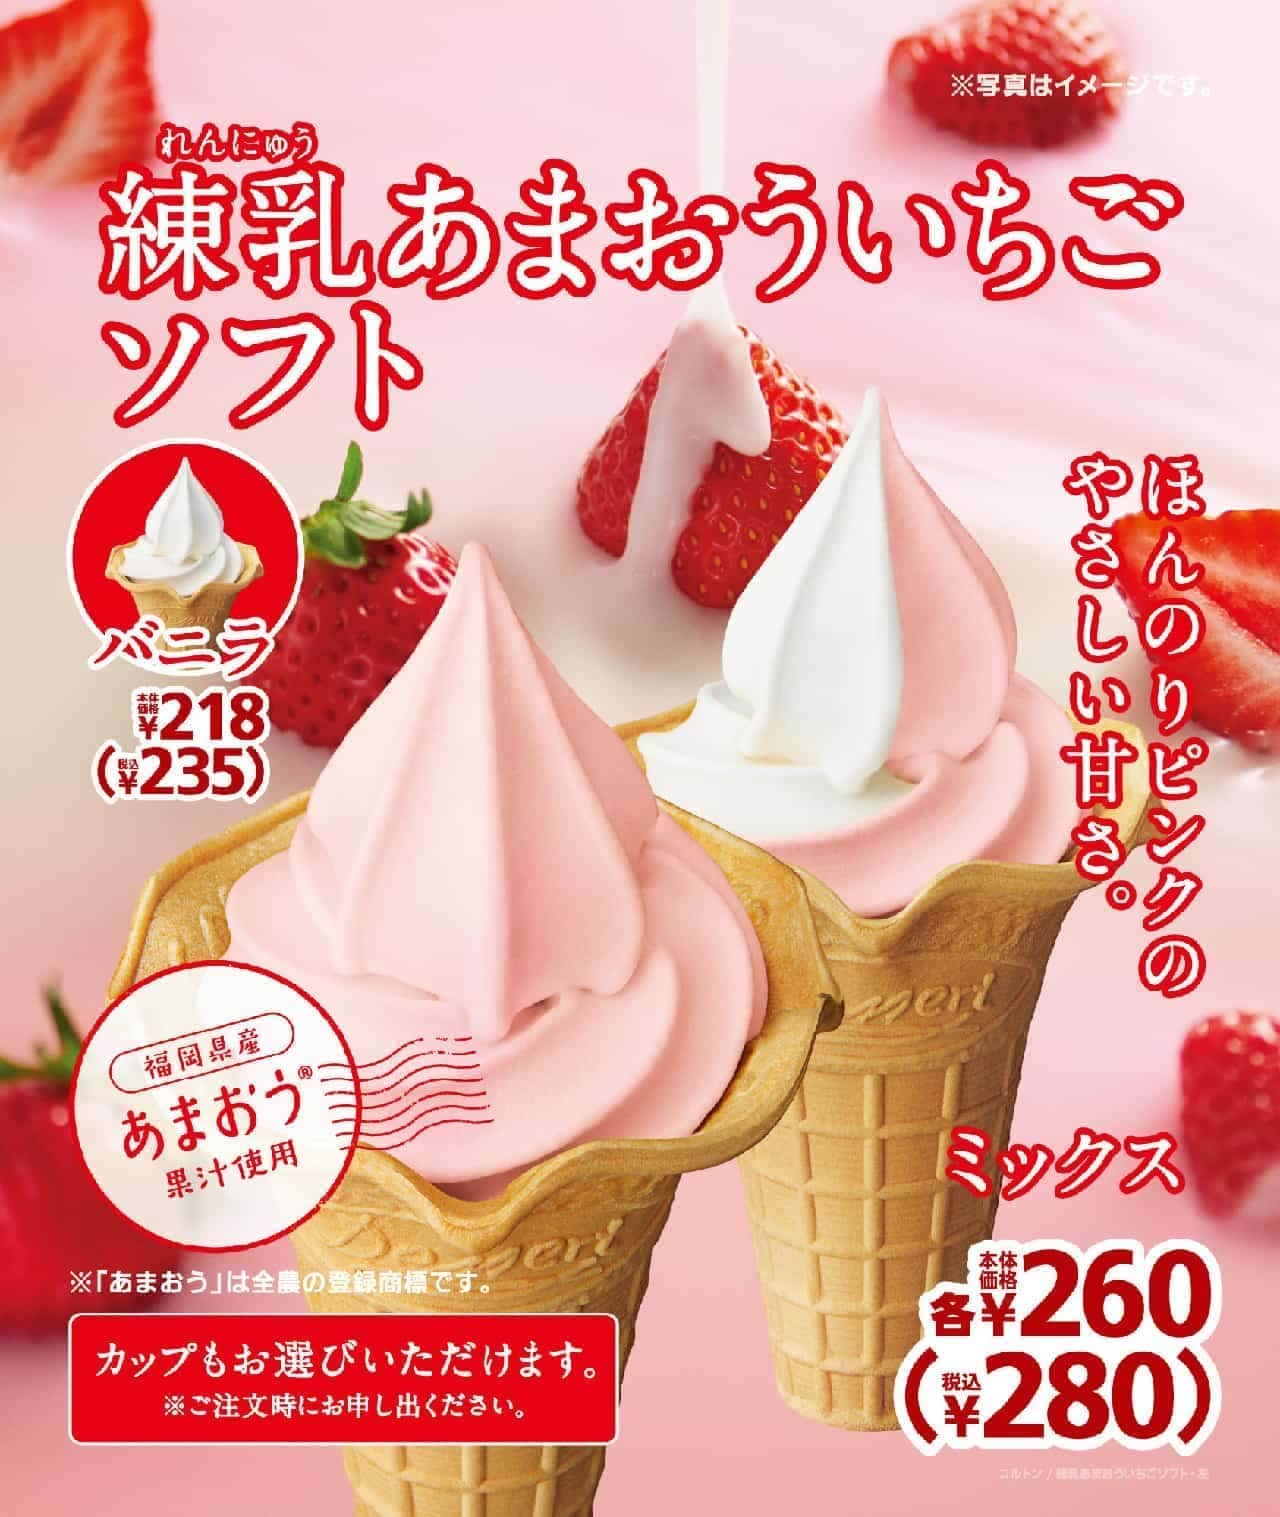 Mini-Stop "Nerikyu Amau Strawberry Soft".